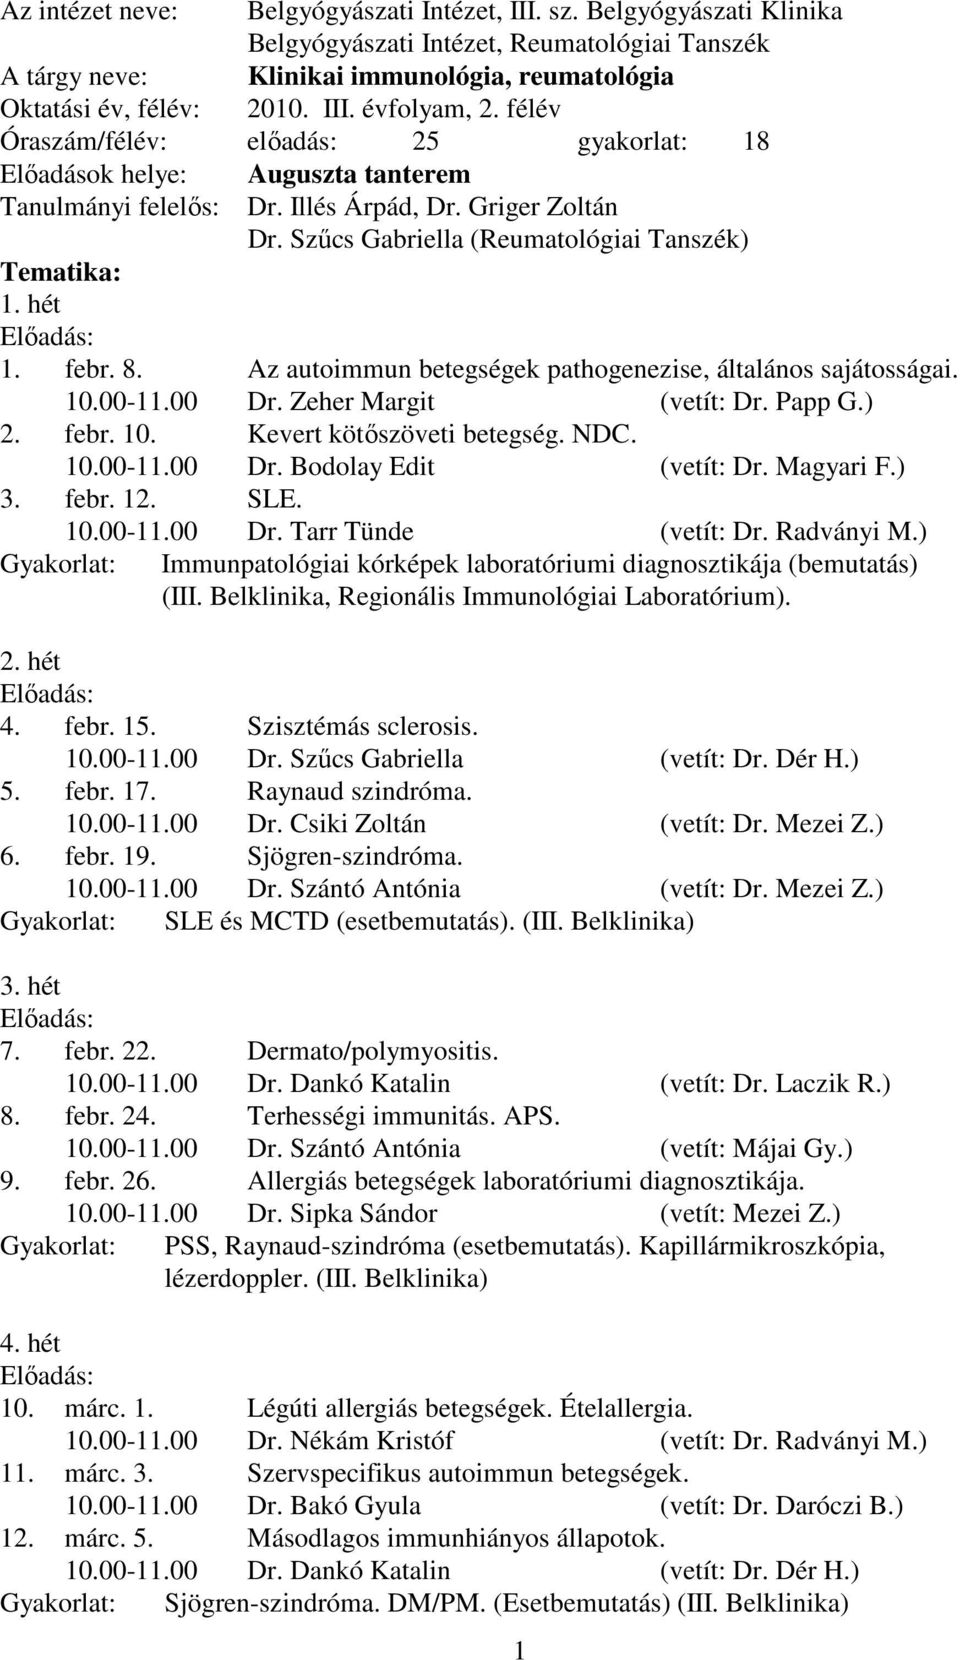 febr. 8. Az autoimmun betegségek pathogenezise, általános sajátosságai. 10.00-11.00 Dr. Zeher Margit (vetít: Dr. Papp G.) 2. febr. 10. Kevert kötıszöveti betegség. NDC. 10.00-11.00 Dr. Bodolay Edit (vetít: Dr.